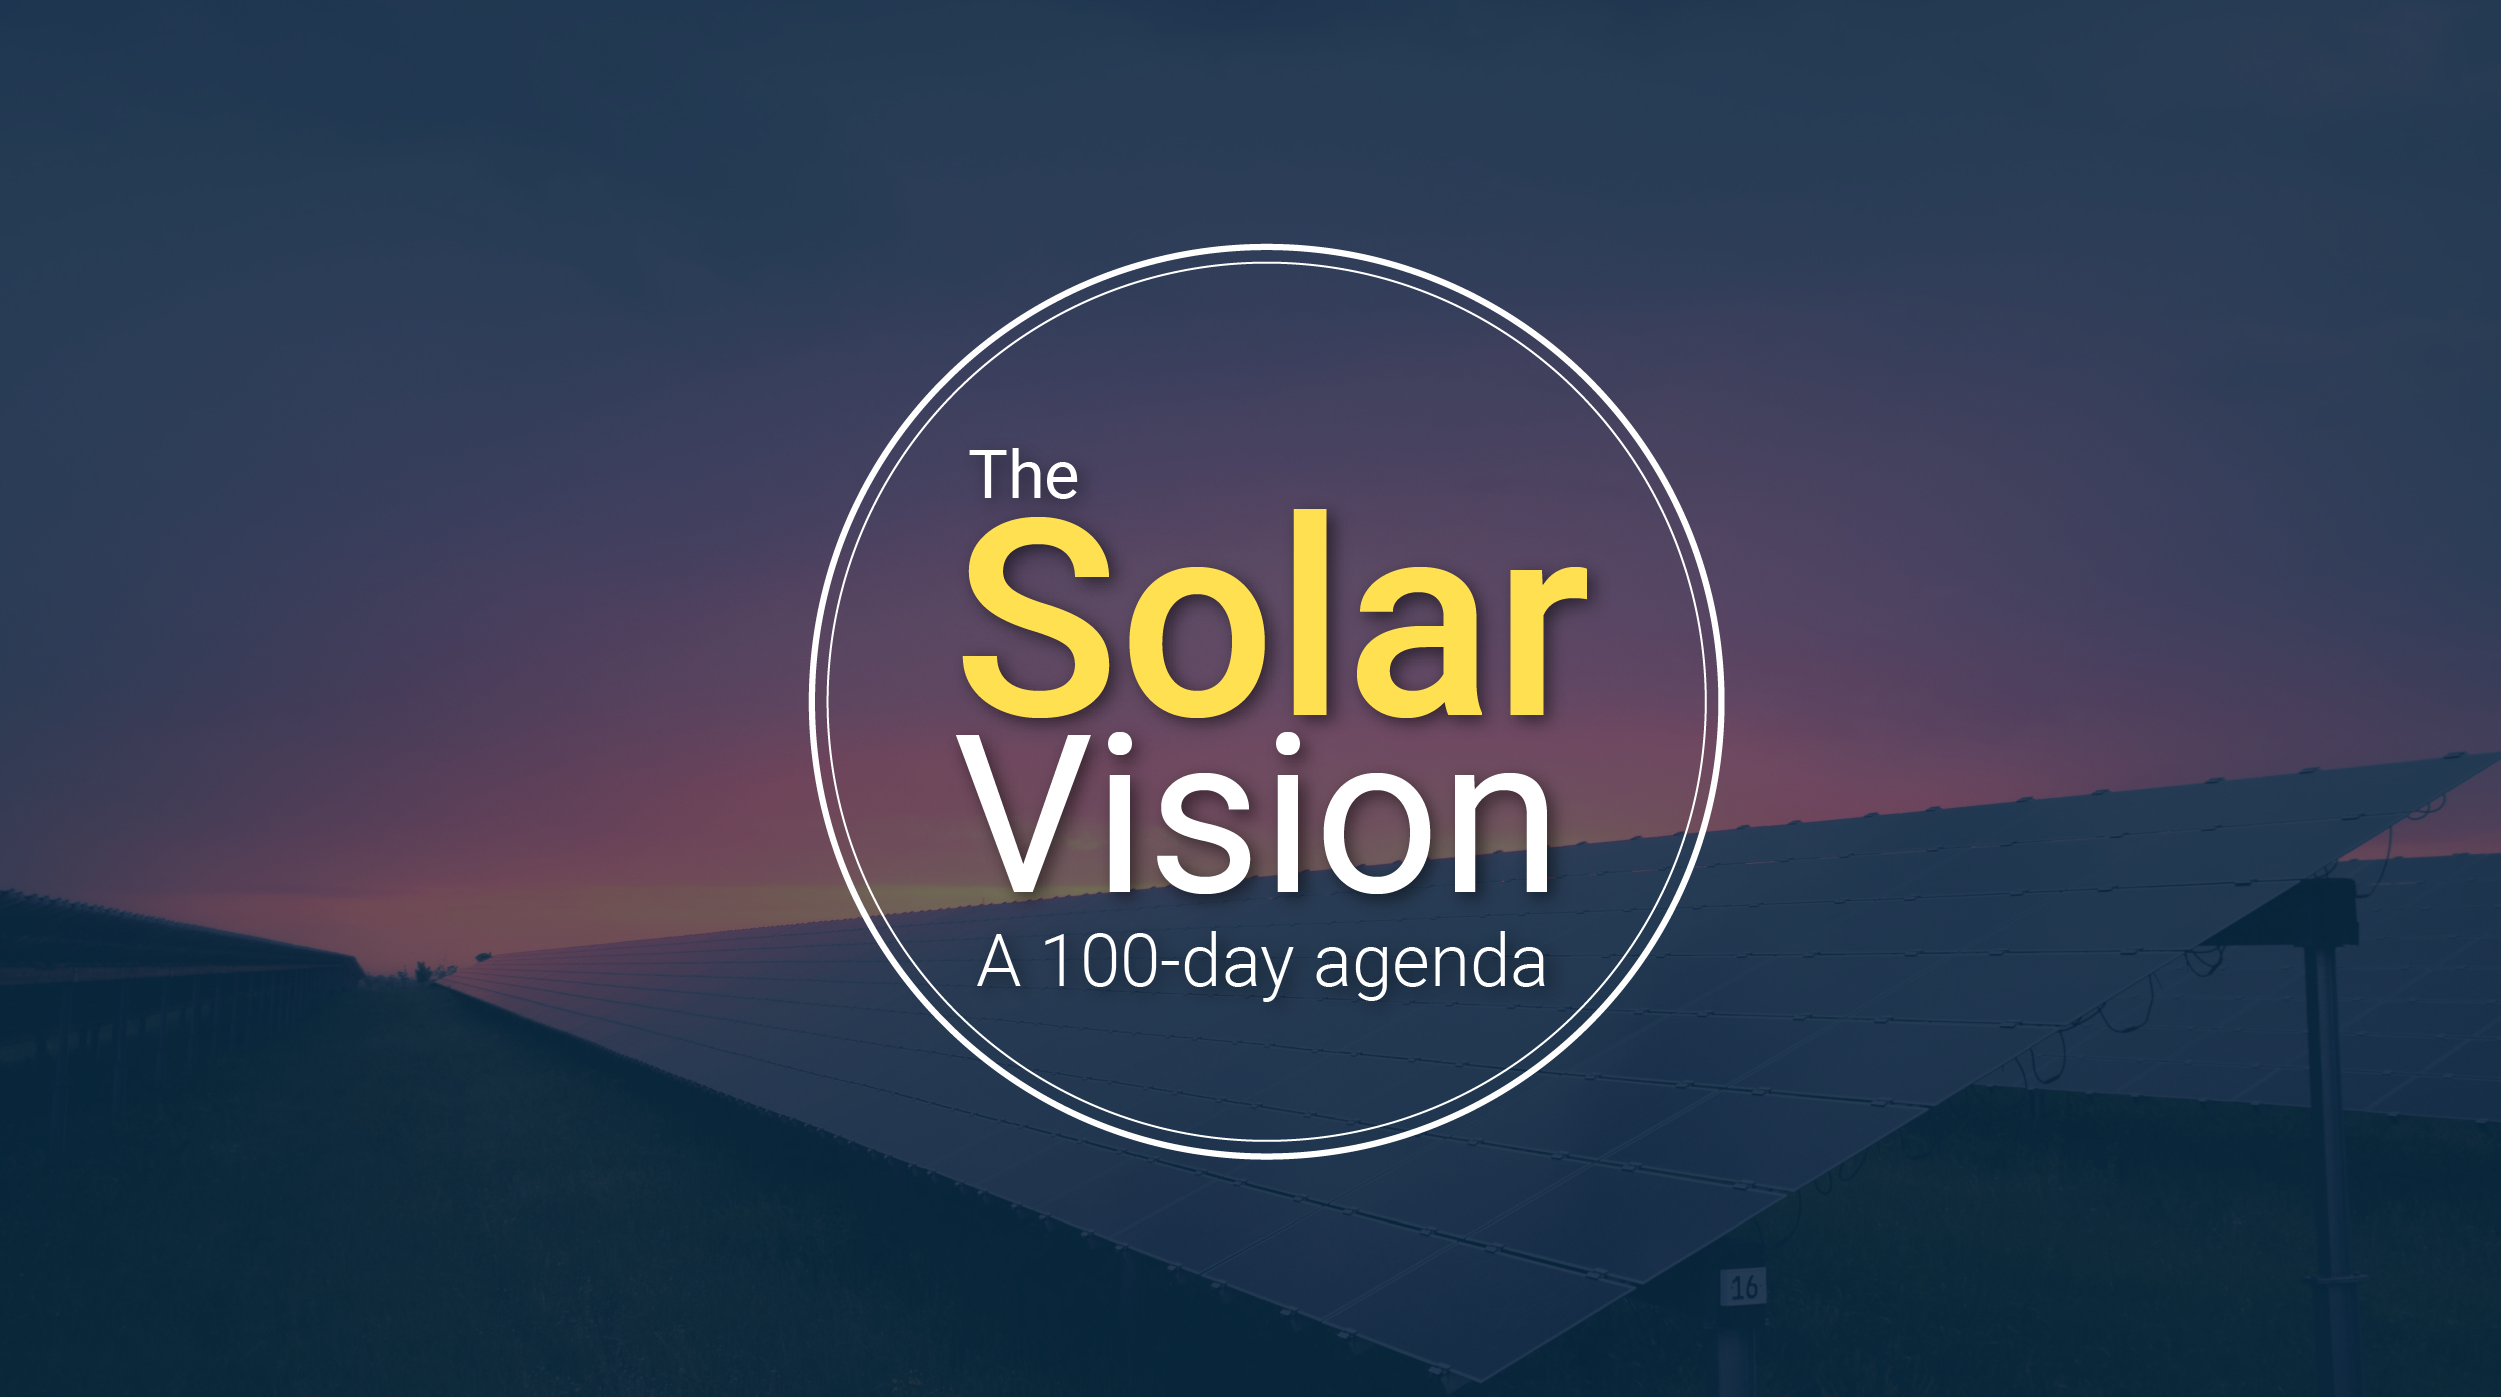 seia-solar-vision-100-day-agenda-biden-2021-117th-congress